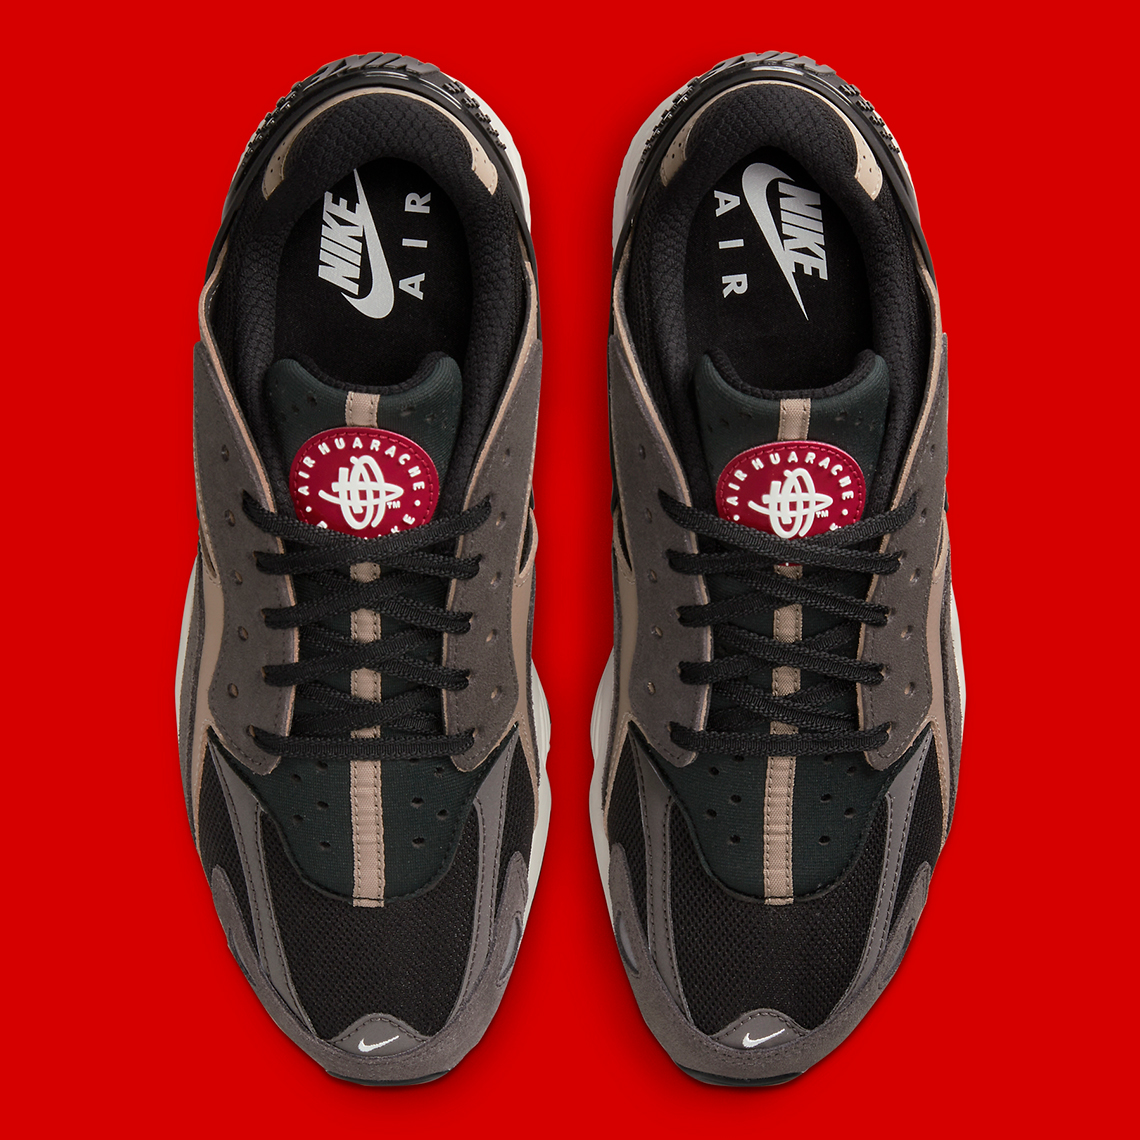 Nike Air Huarache Runner Brown Black Tan Dz3306 003 5